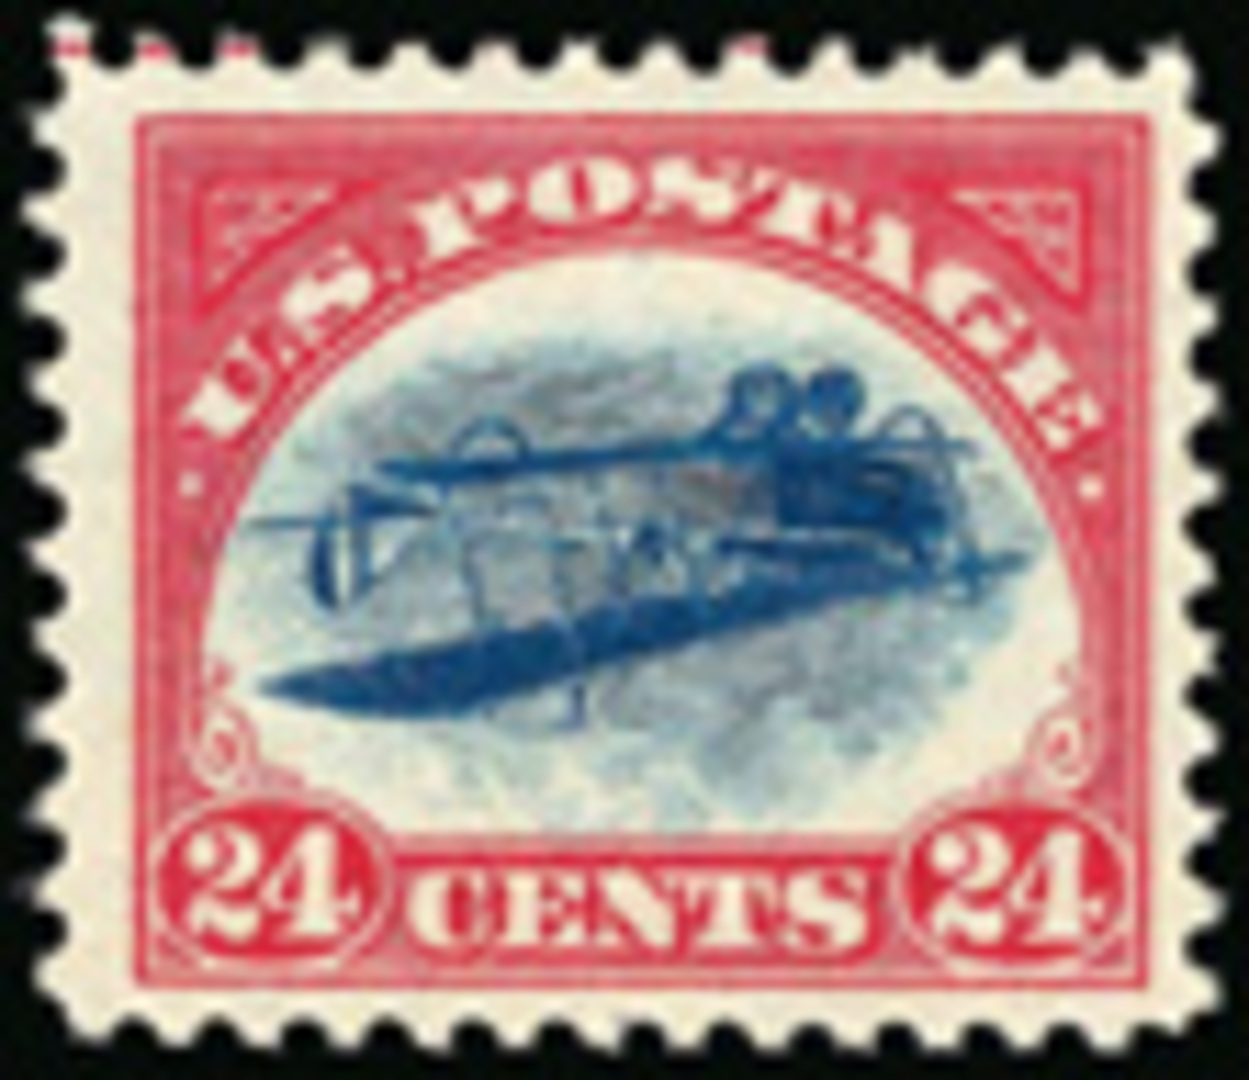 U.S postage stamp